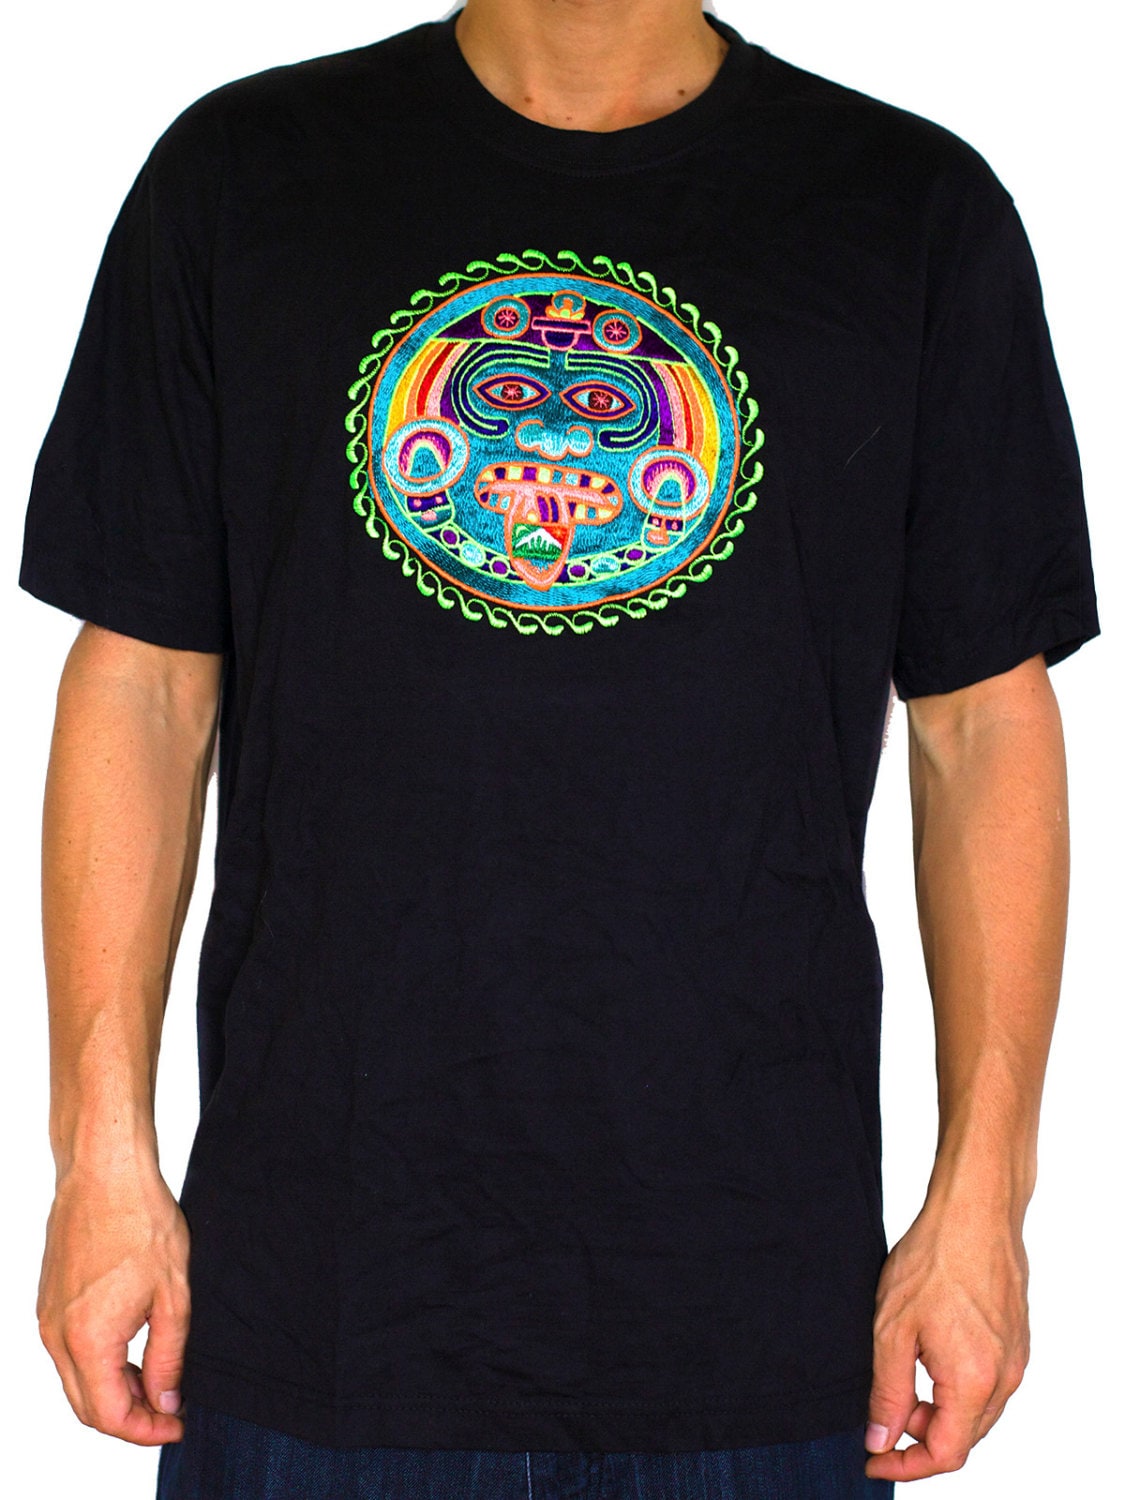 Maya Hofmann 2012 T-Shirt - zic zac ancient LSD calendar blacklight handmade embroidery no print goa t-shirt